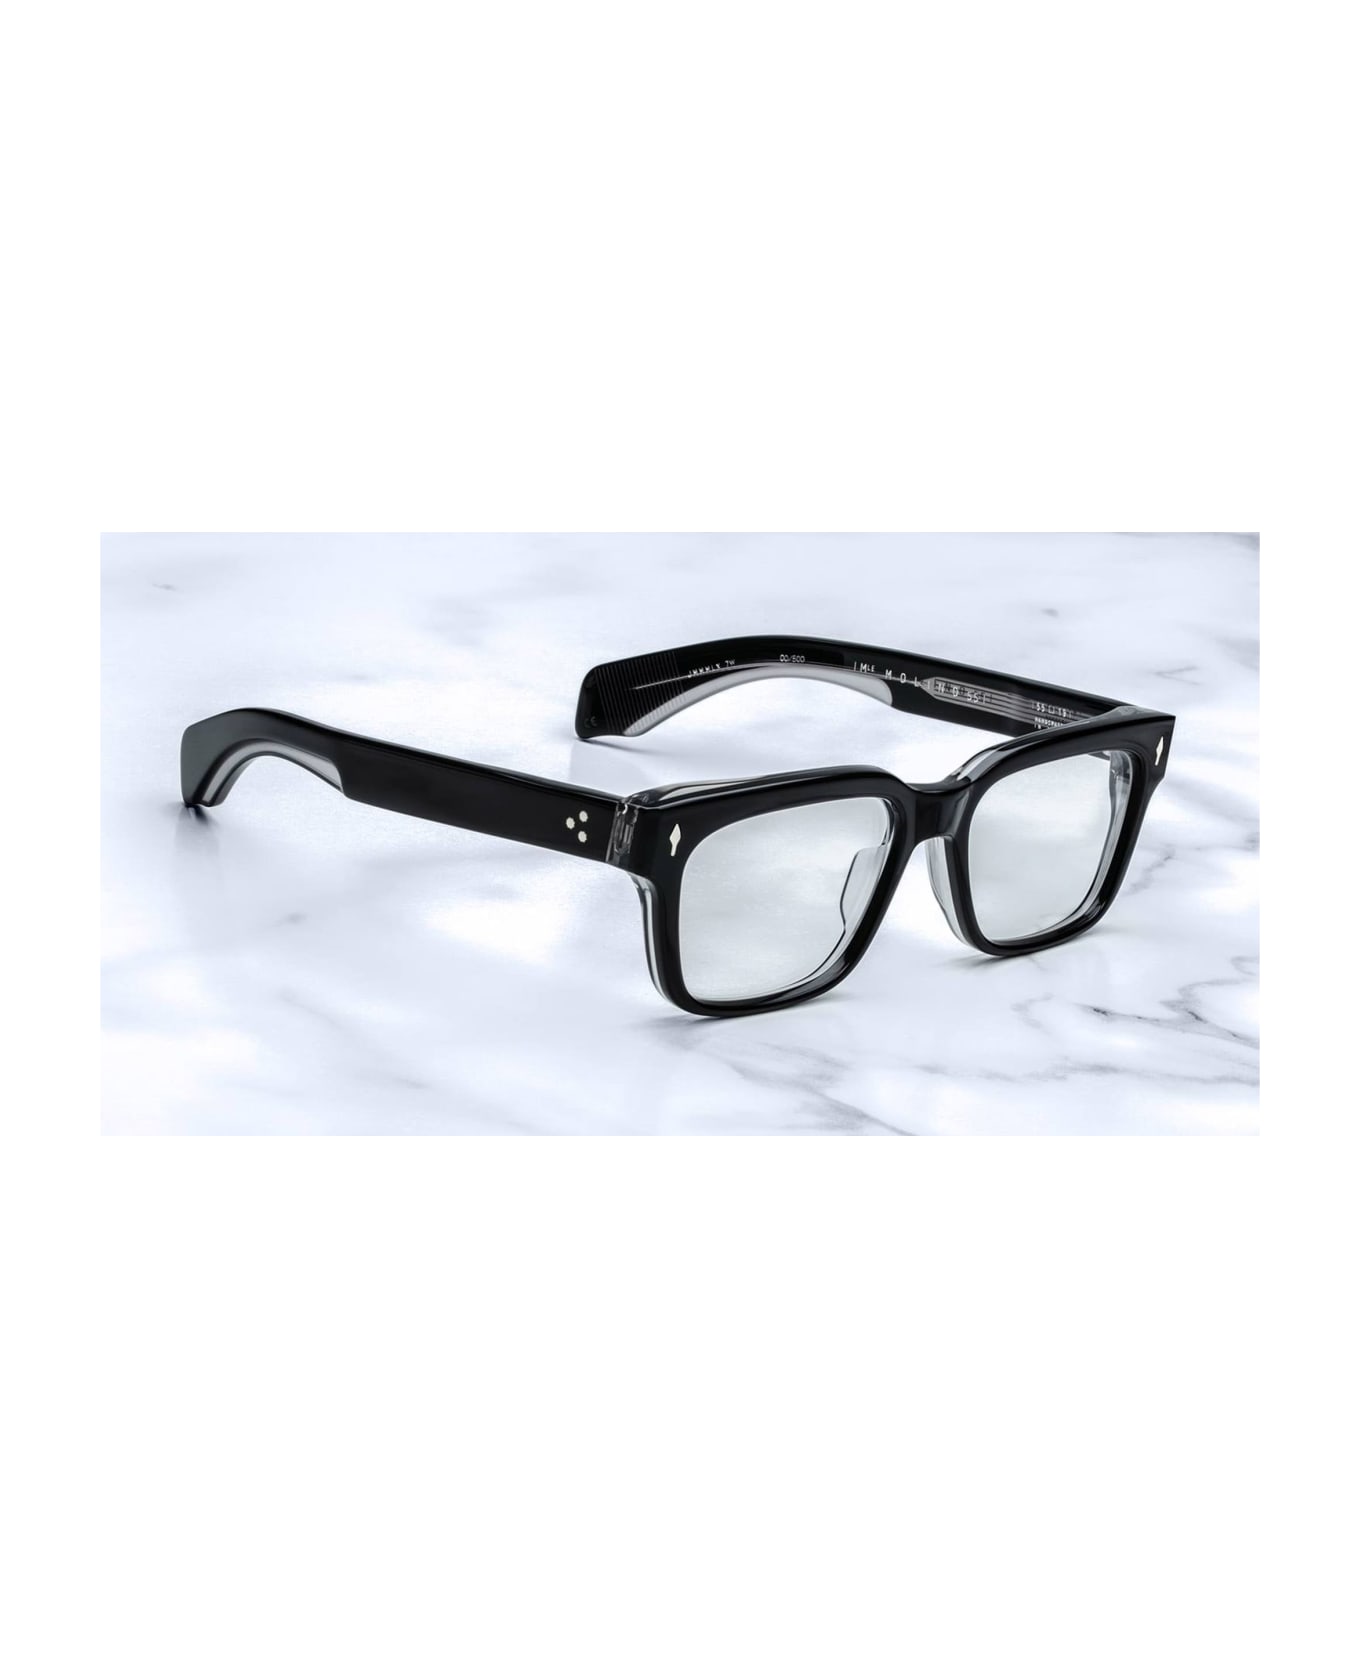 Jacques Marie Mage Molino 55 - Apollo Rx Glasses